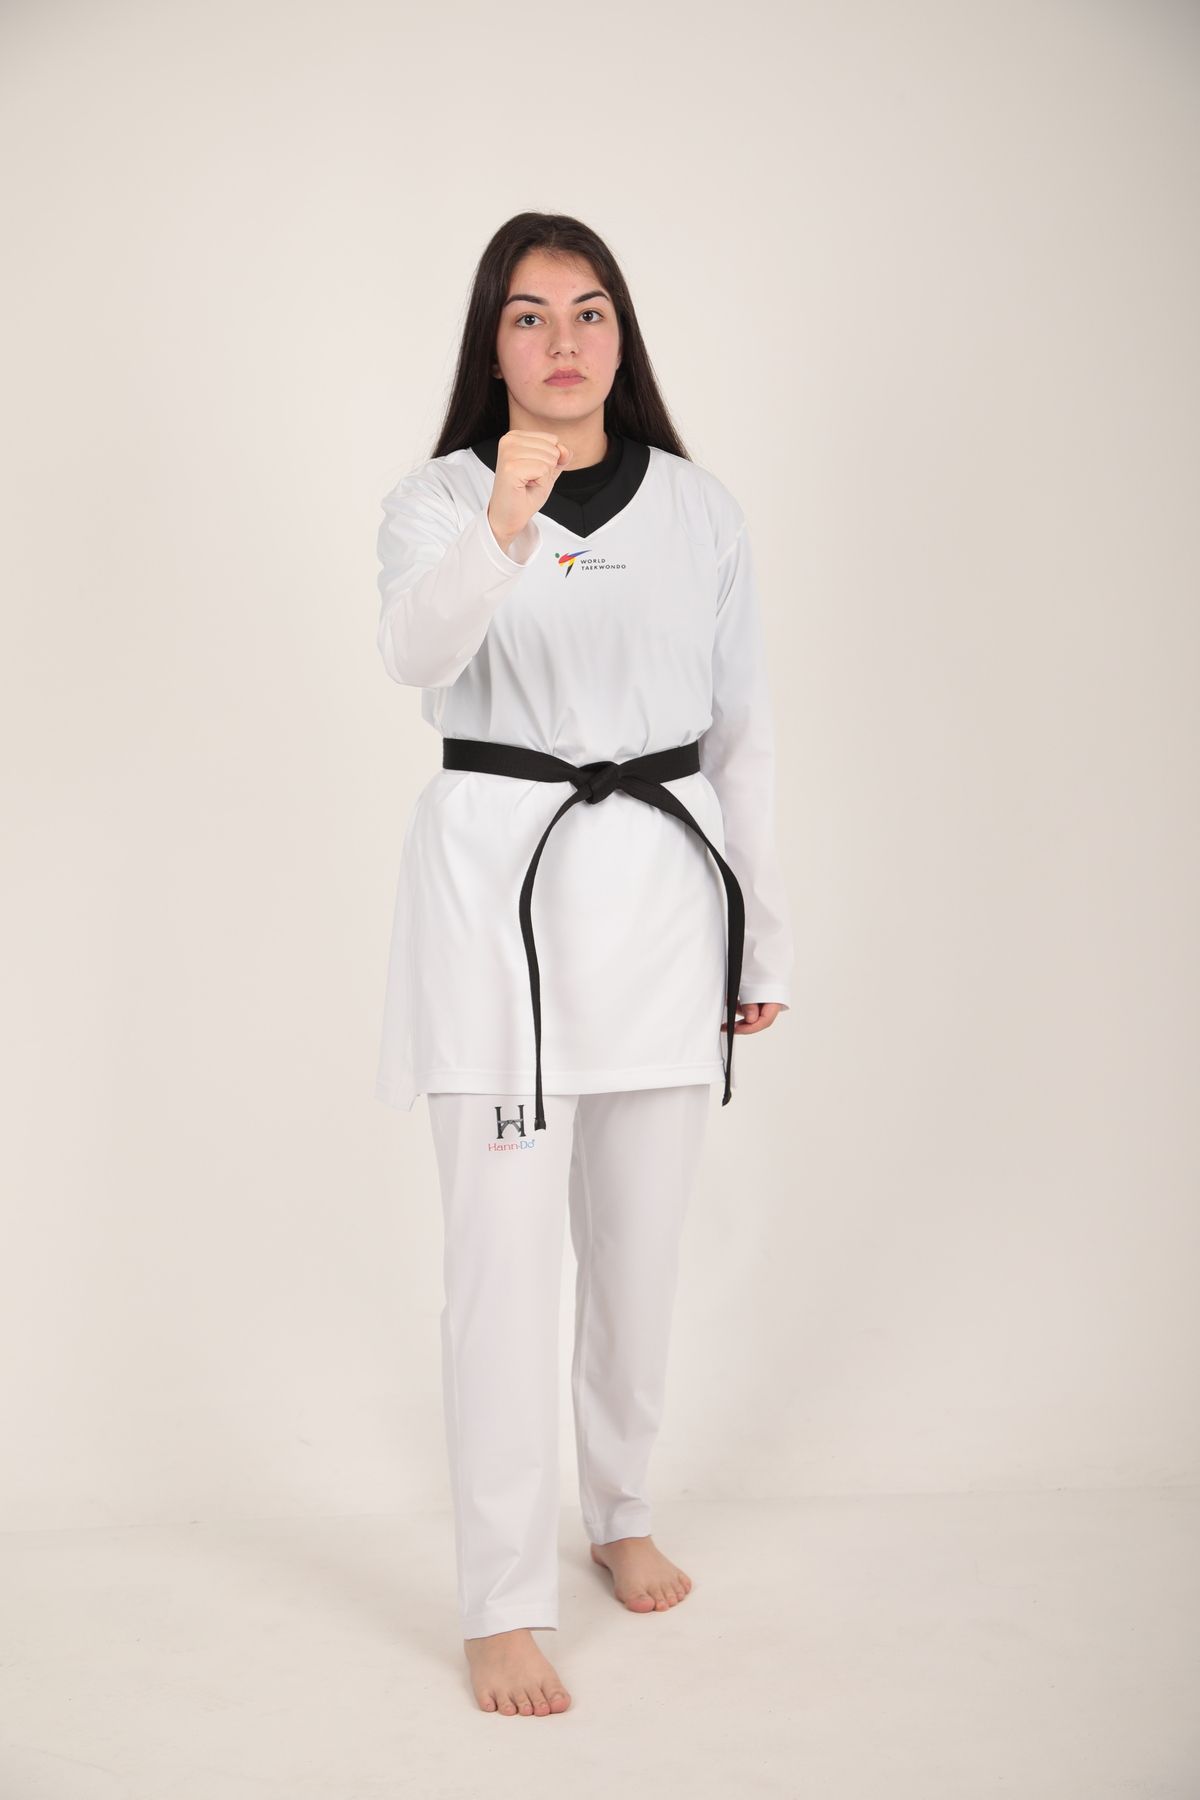 HANN DO Taekwondo / Tekvando Elbisesi OLİMPİK DOBOK  (YENİ NESİL) Esnek Kumaş